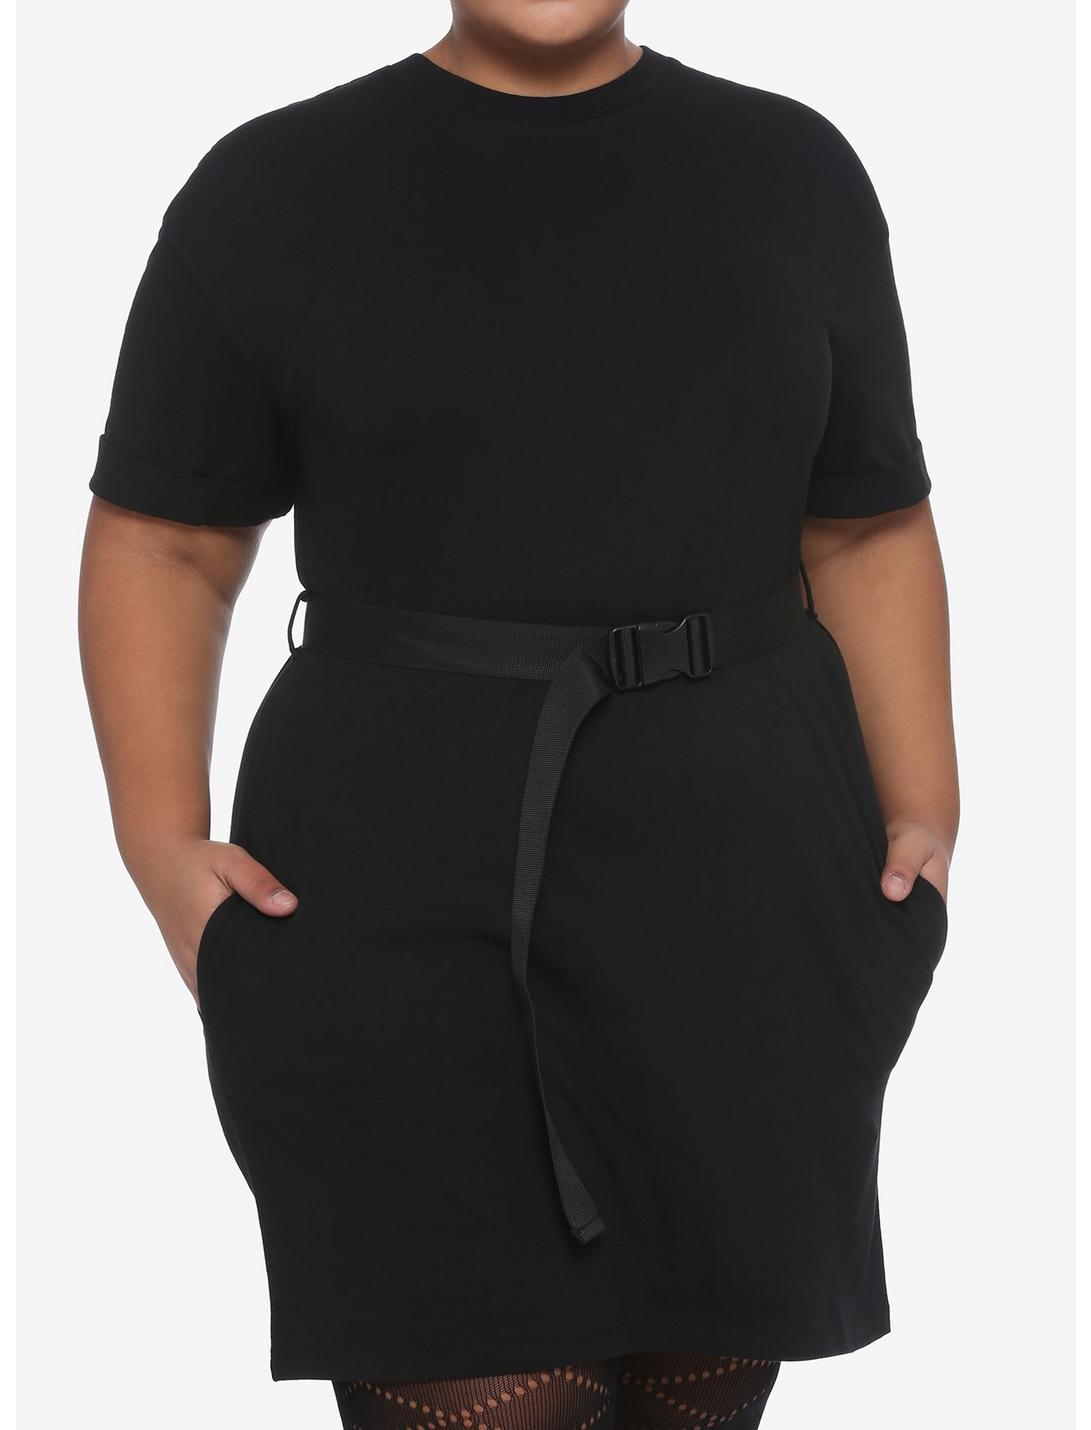 Black Belted T-Shirt Dress Plus Size, BLACK, hi-res